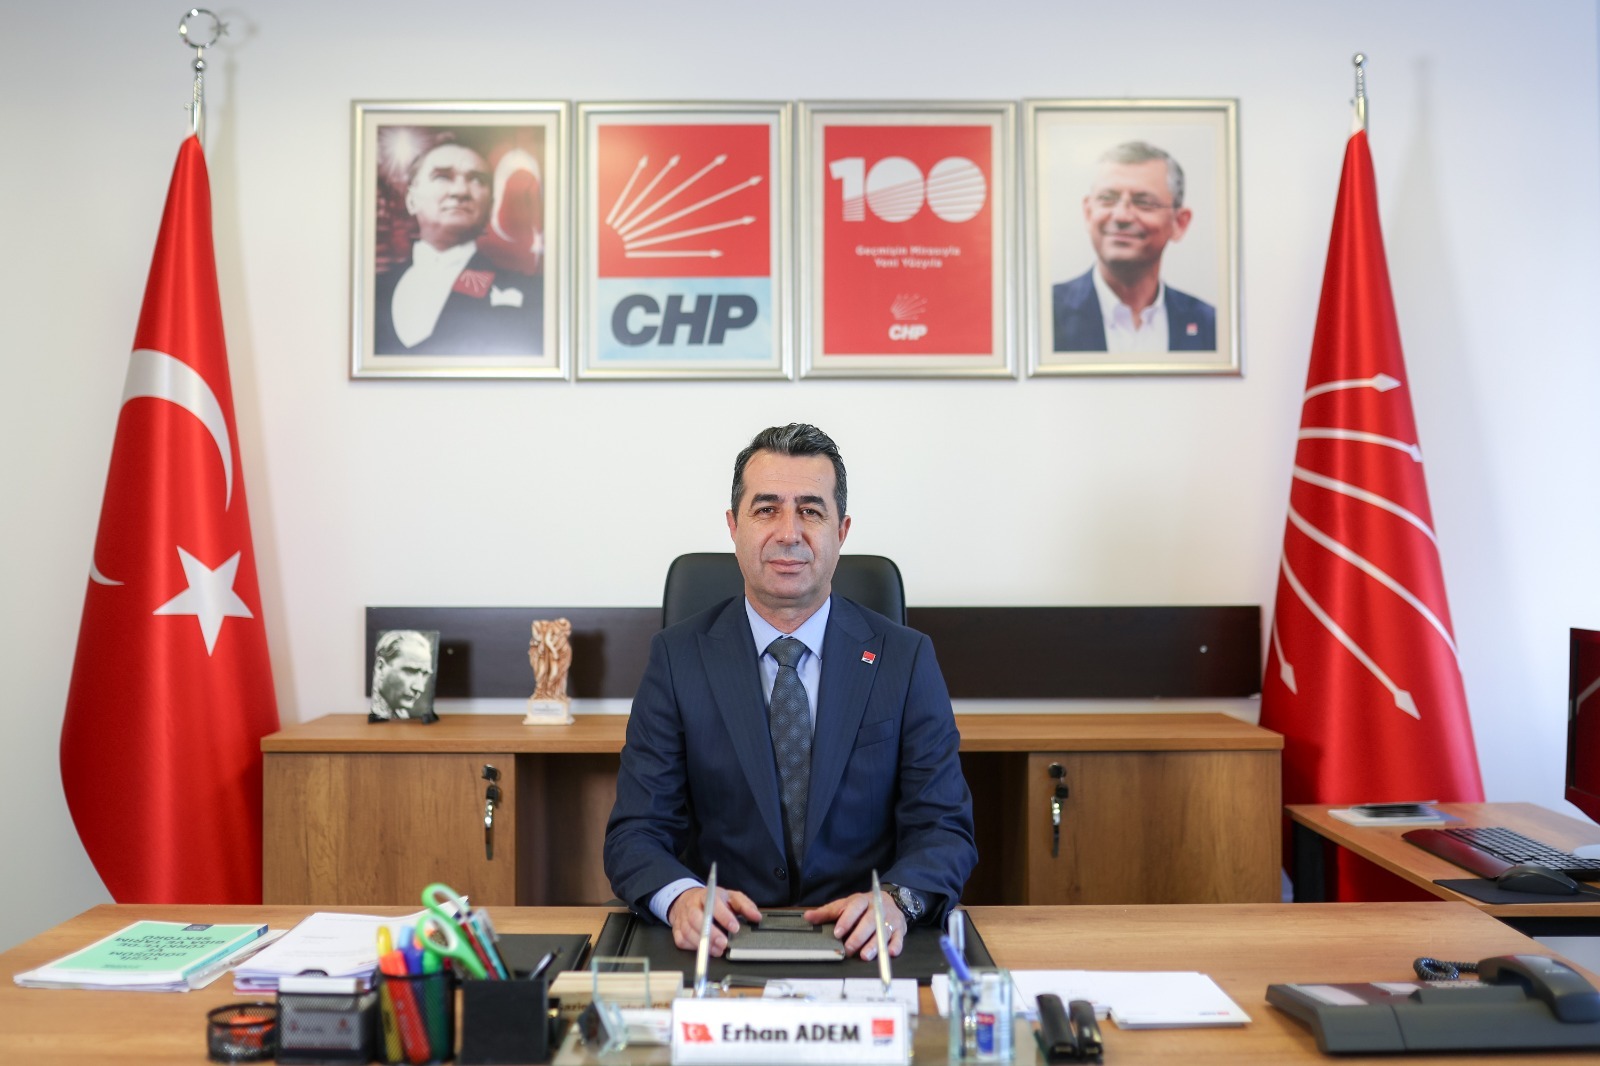 CHP Genel Başkan Yardımcısı Erhan Adem, AKP'nin tarım politikalarını eleştirdi: 